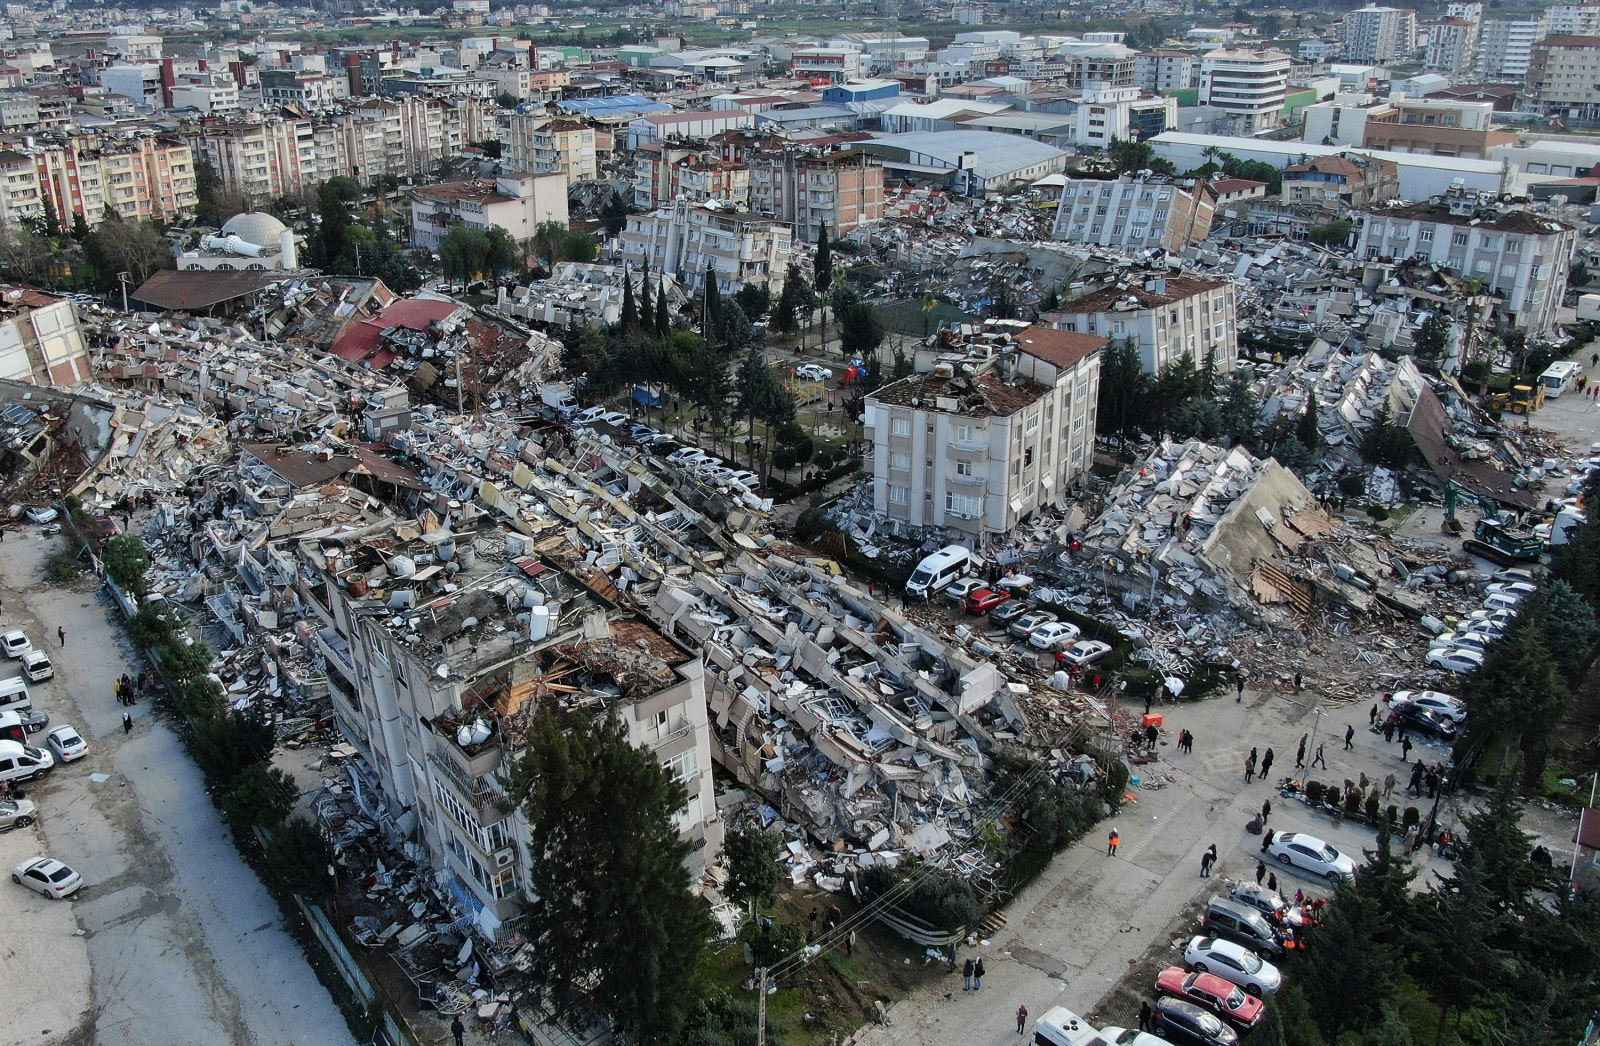 Nhiều nạn nhân mắc kẹt sau động đất ở Thổ Nhĩ Kỳ và Syria được giải cứu nhờ mạng xã hội - Ảnh 1.